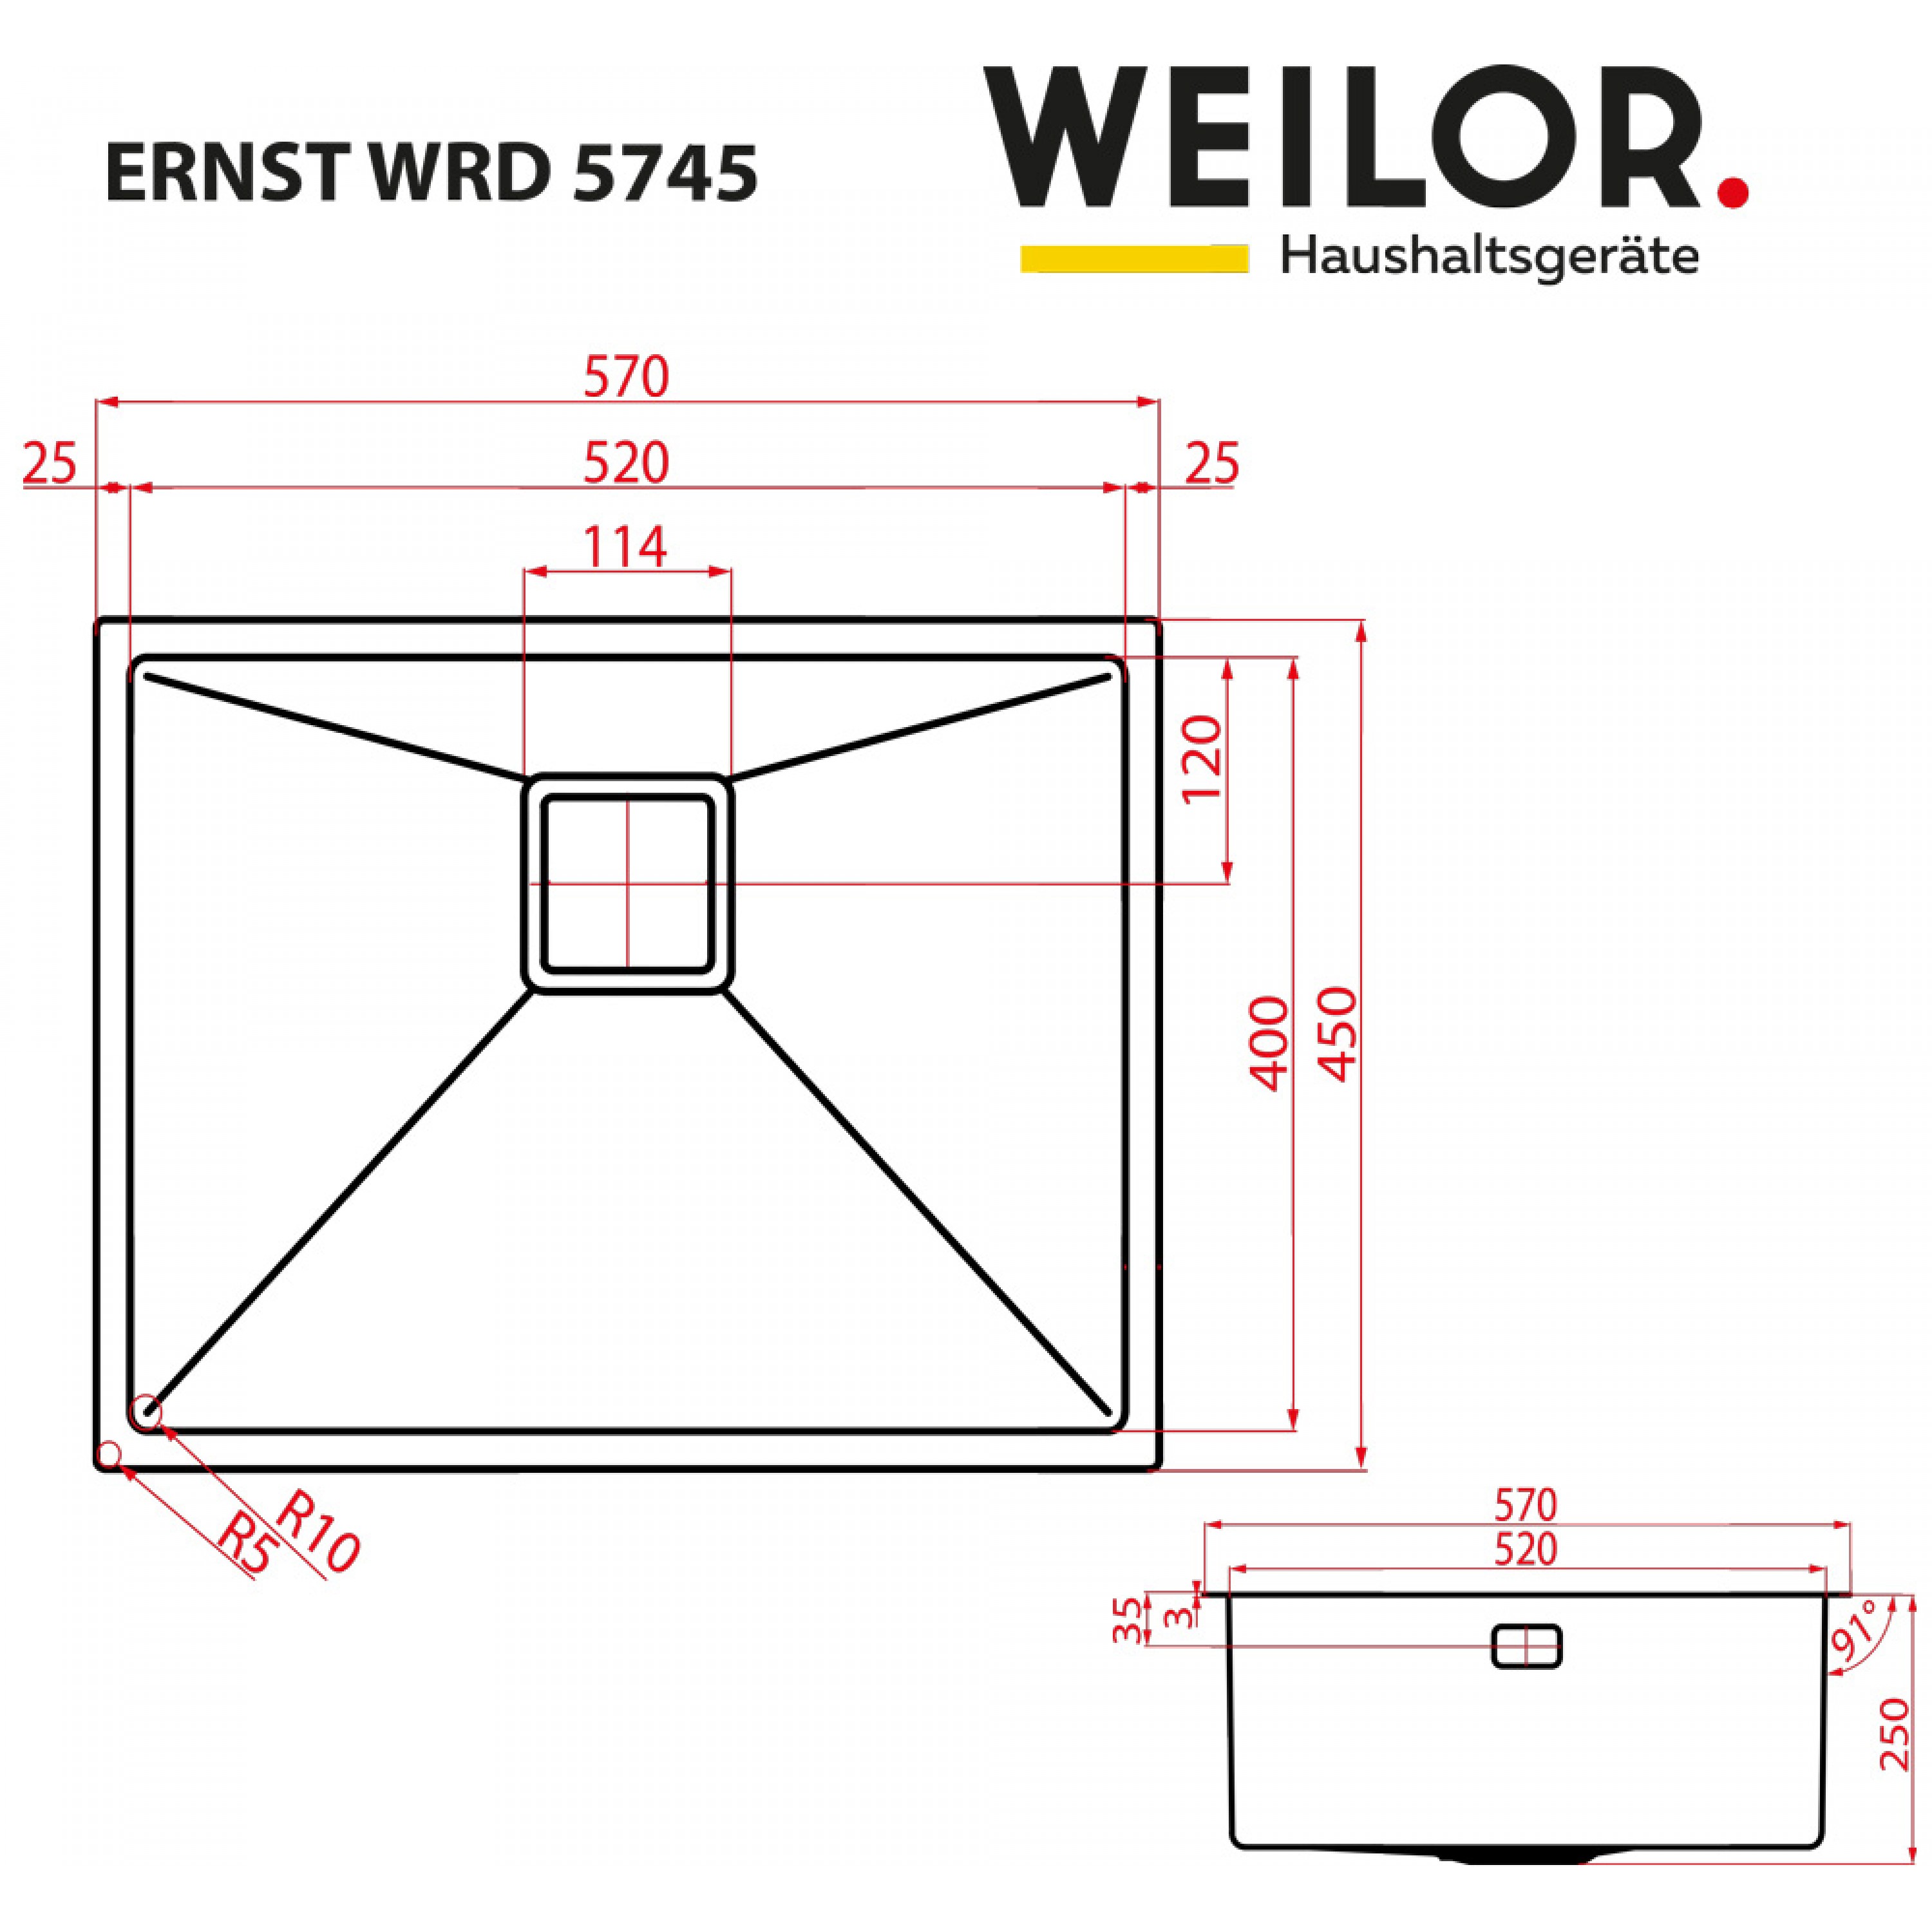 Weilor ERNST WRD 5745 Габаритные размеры